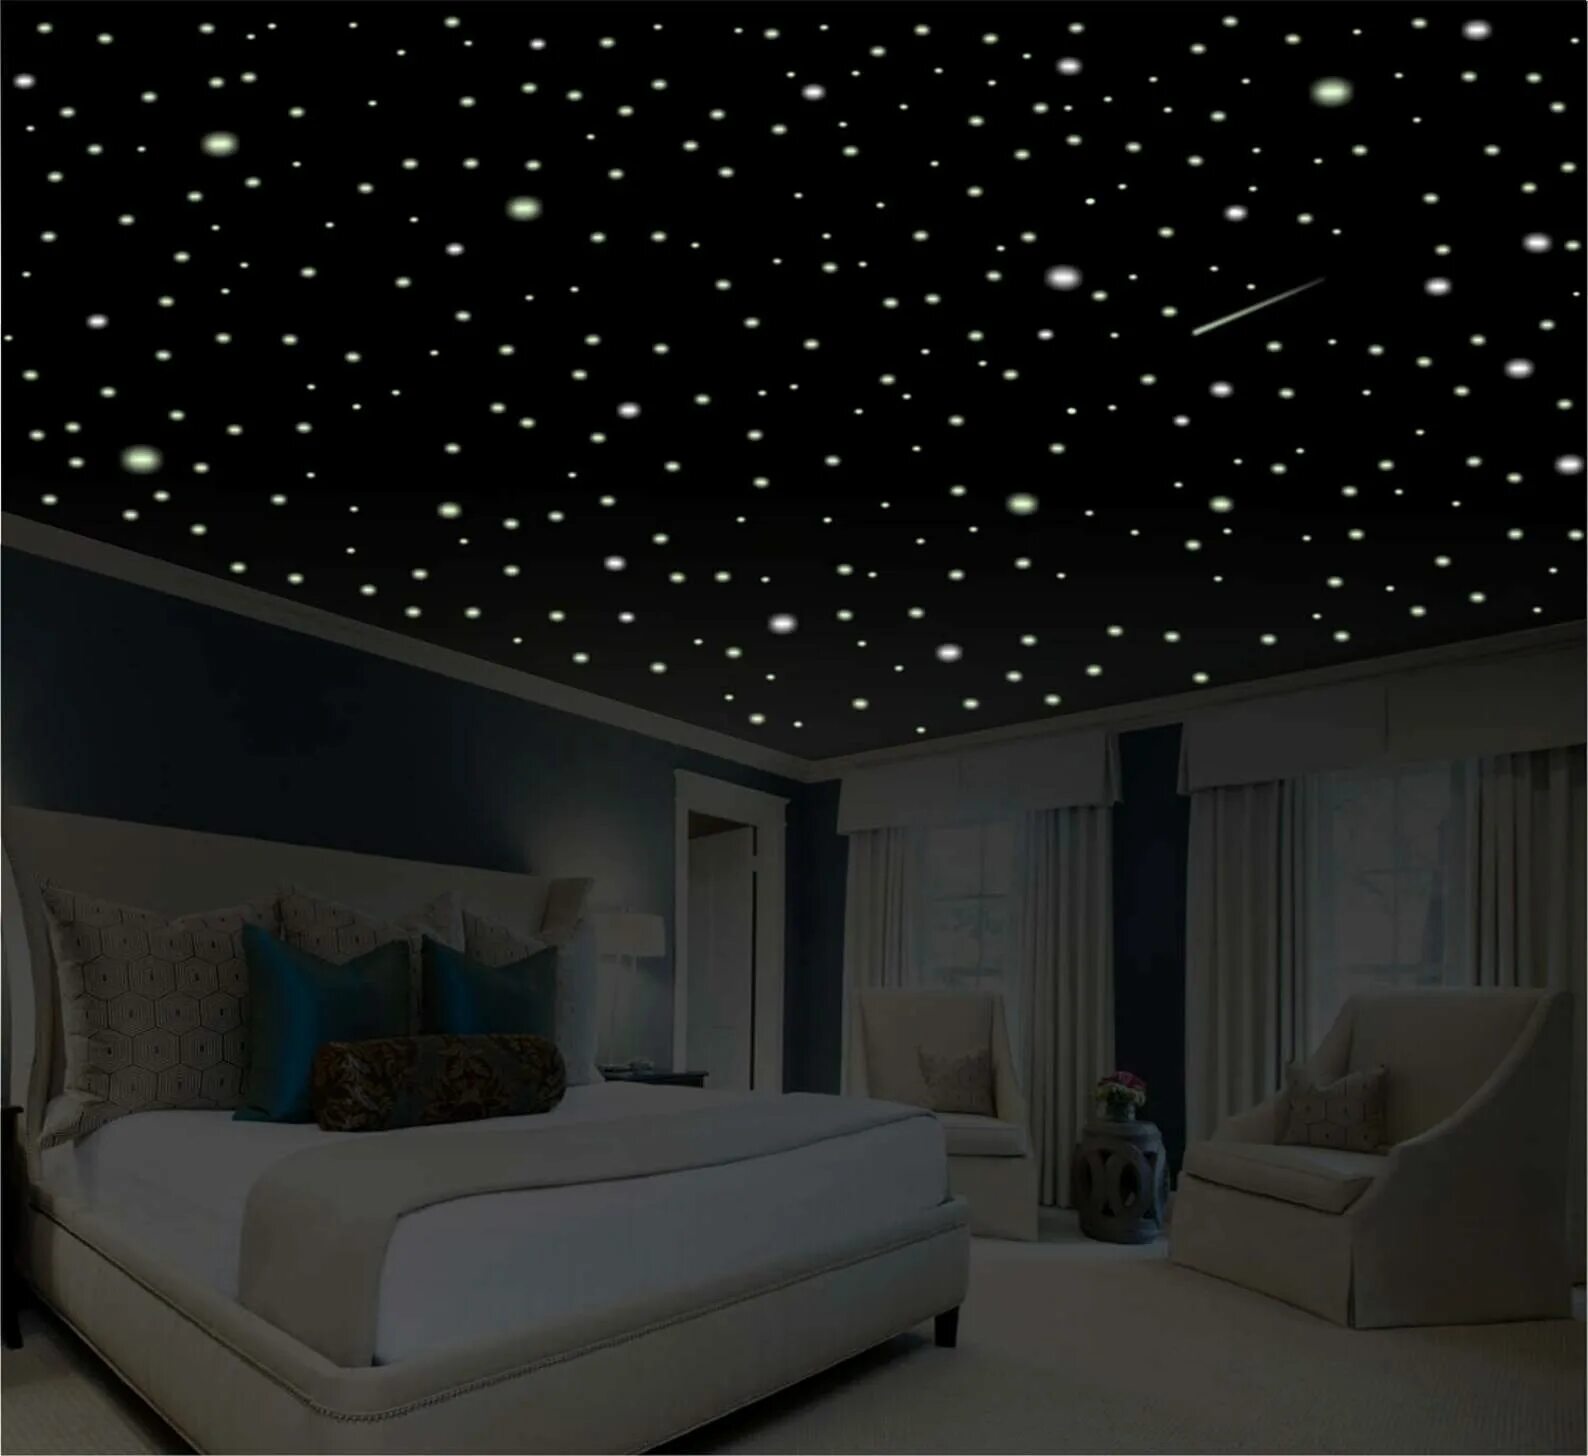 Натяжной потолок звездное небо. Звездное небо с мерцанием звезд + натяжной потолок. Потолок "звездное небо" 20 плиток. ВИПСИЛИНГ звездное небо. Делаем звездное небо